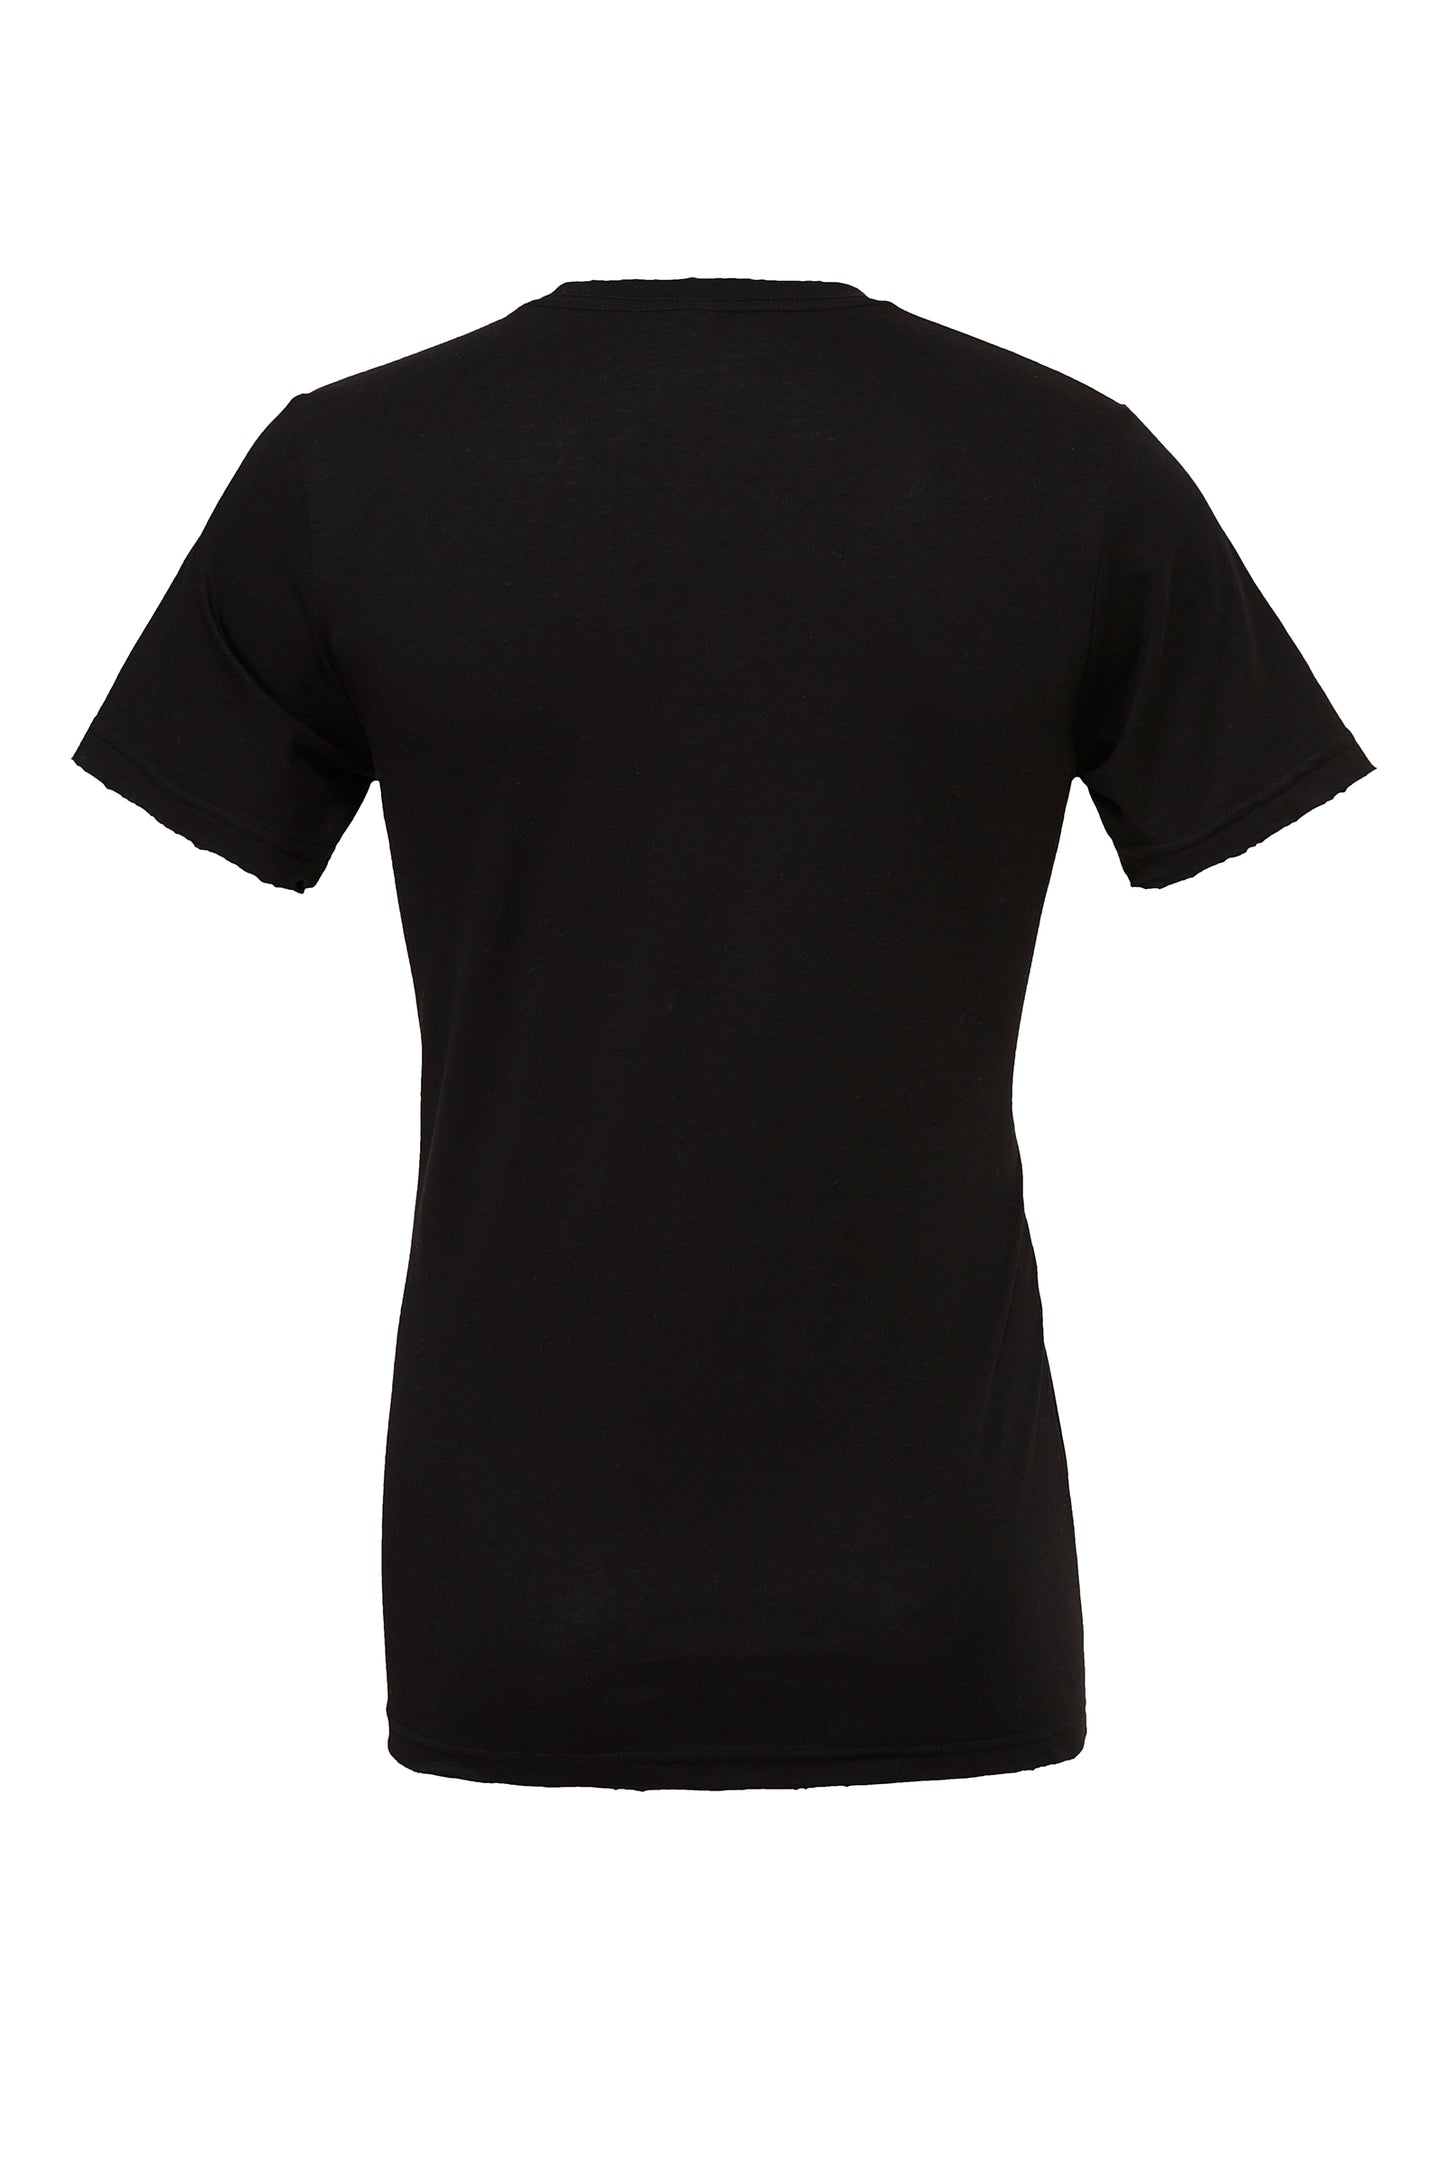 Men's Short Sleeve T-Shirt DTG Print